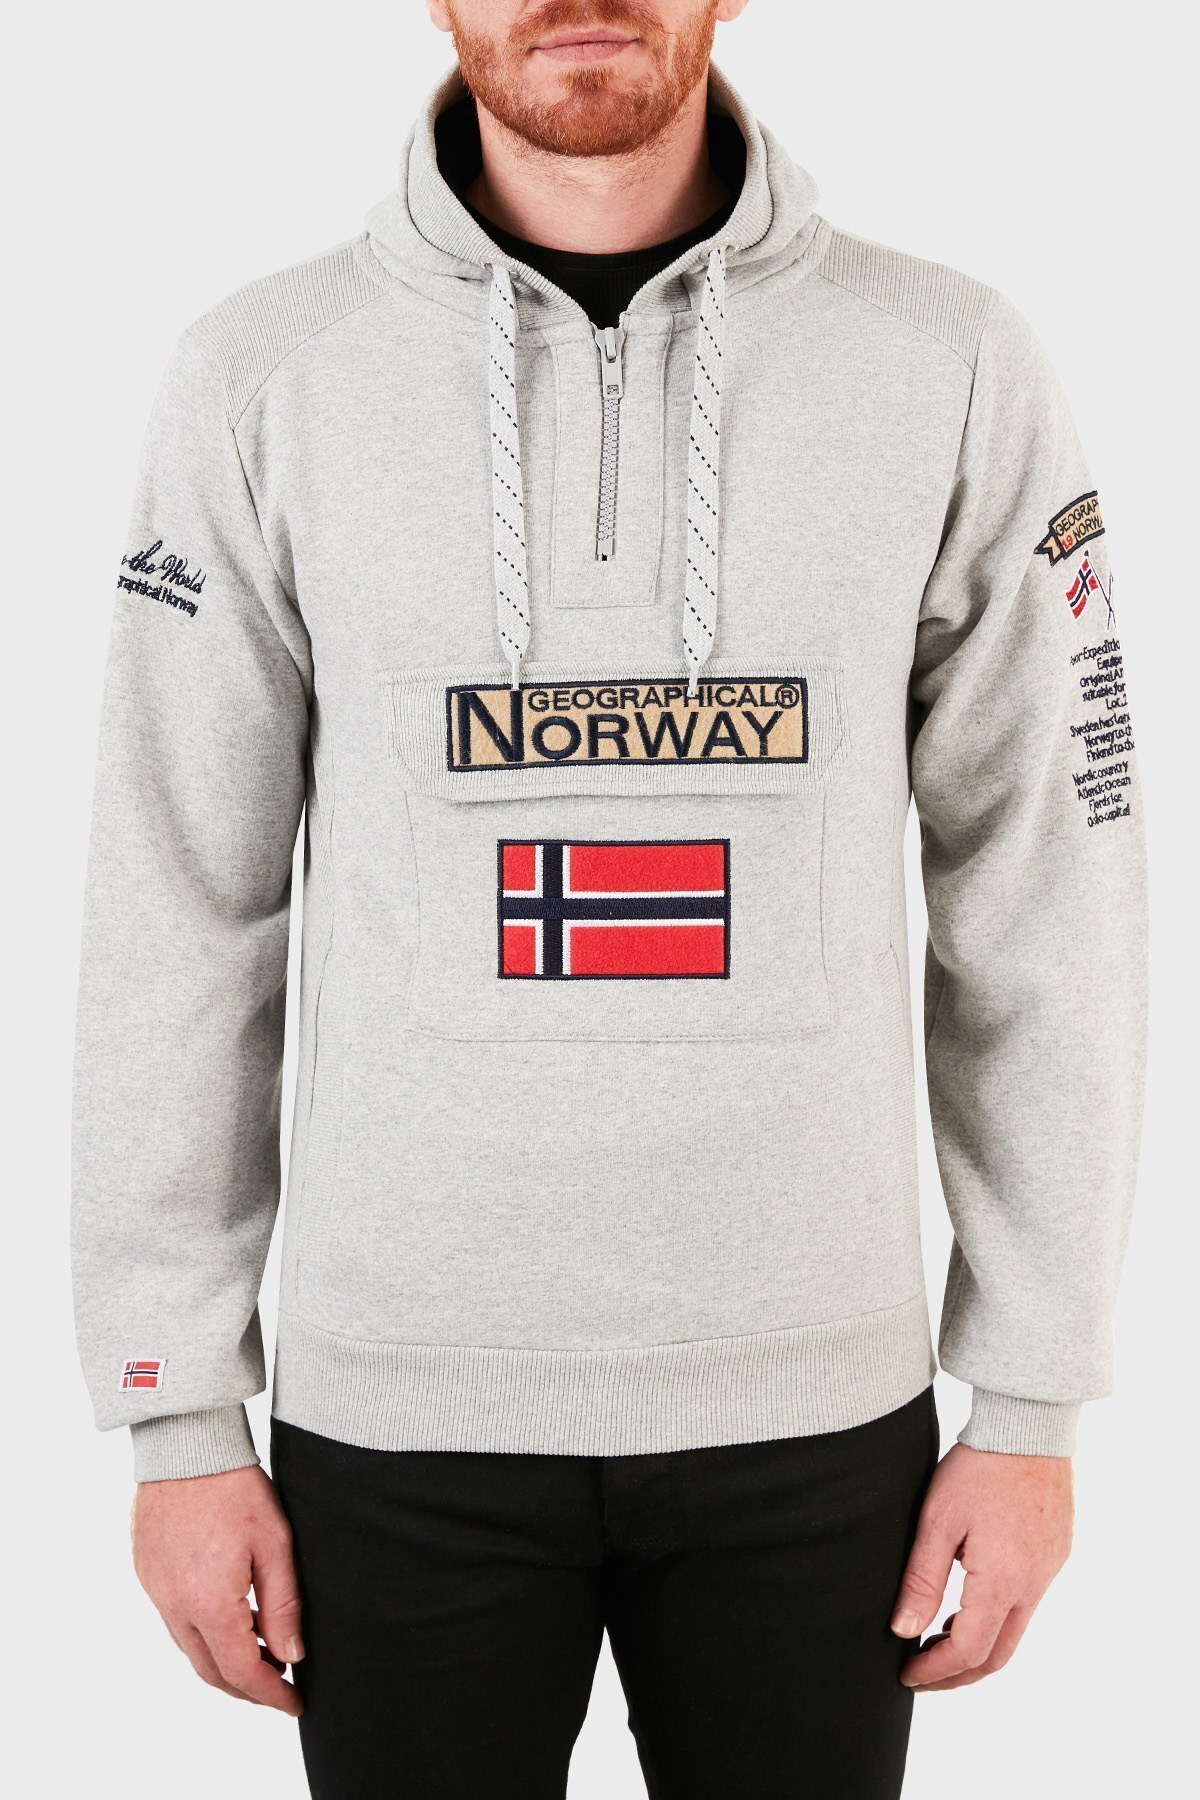 Norway Geographical Kapüşonlu Yarım Fermuarlı Outdoor Erkek Sweat GYMCLASSA100 GRİ